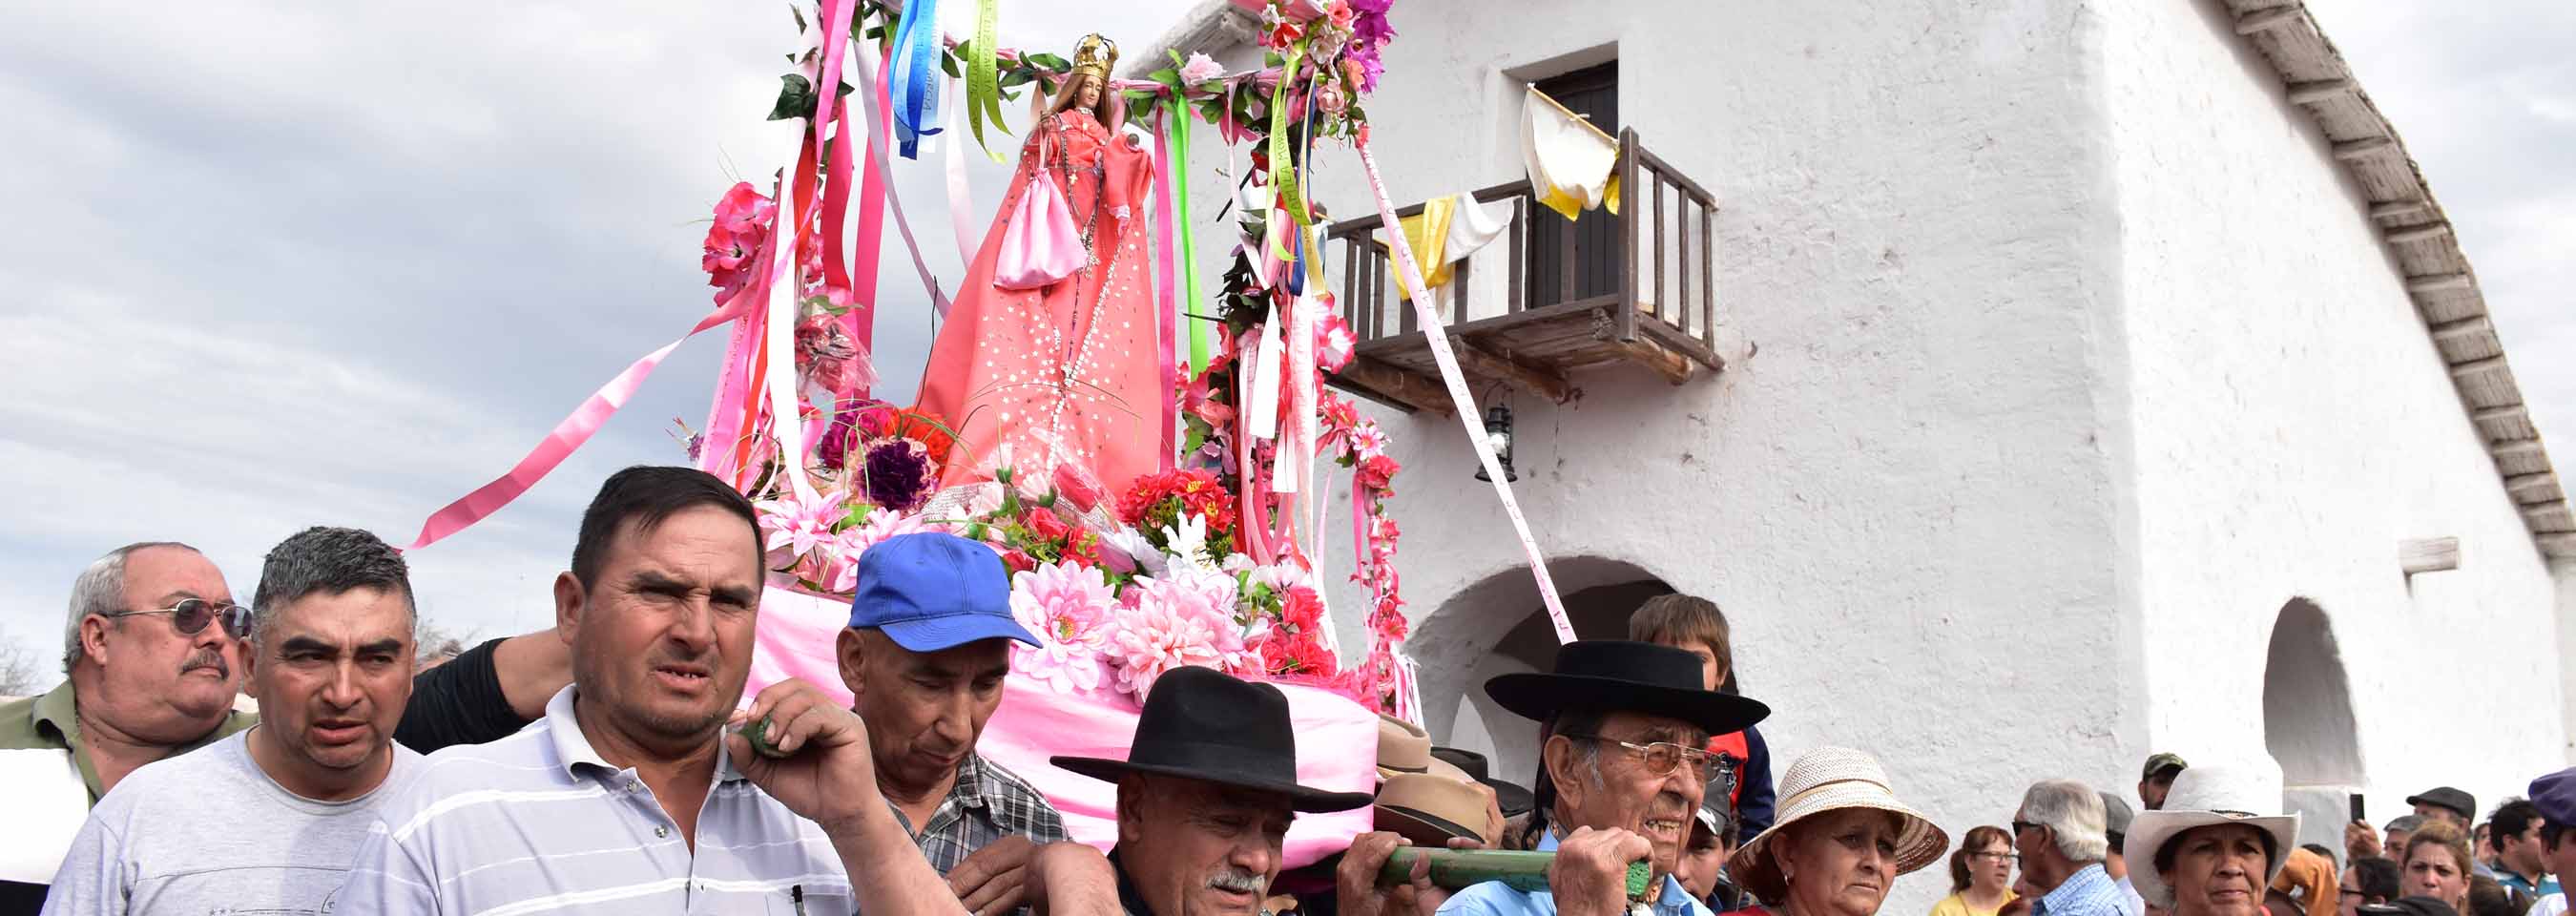 Fervor religioso y tradición en los Festejos de Lagunas del Rosario